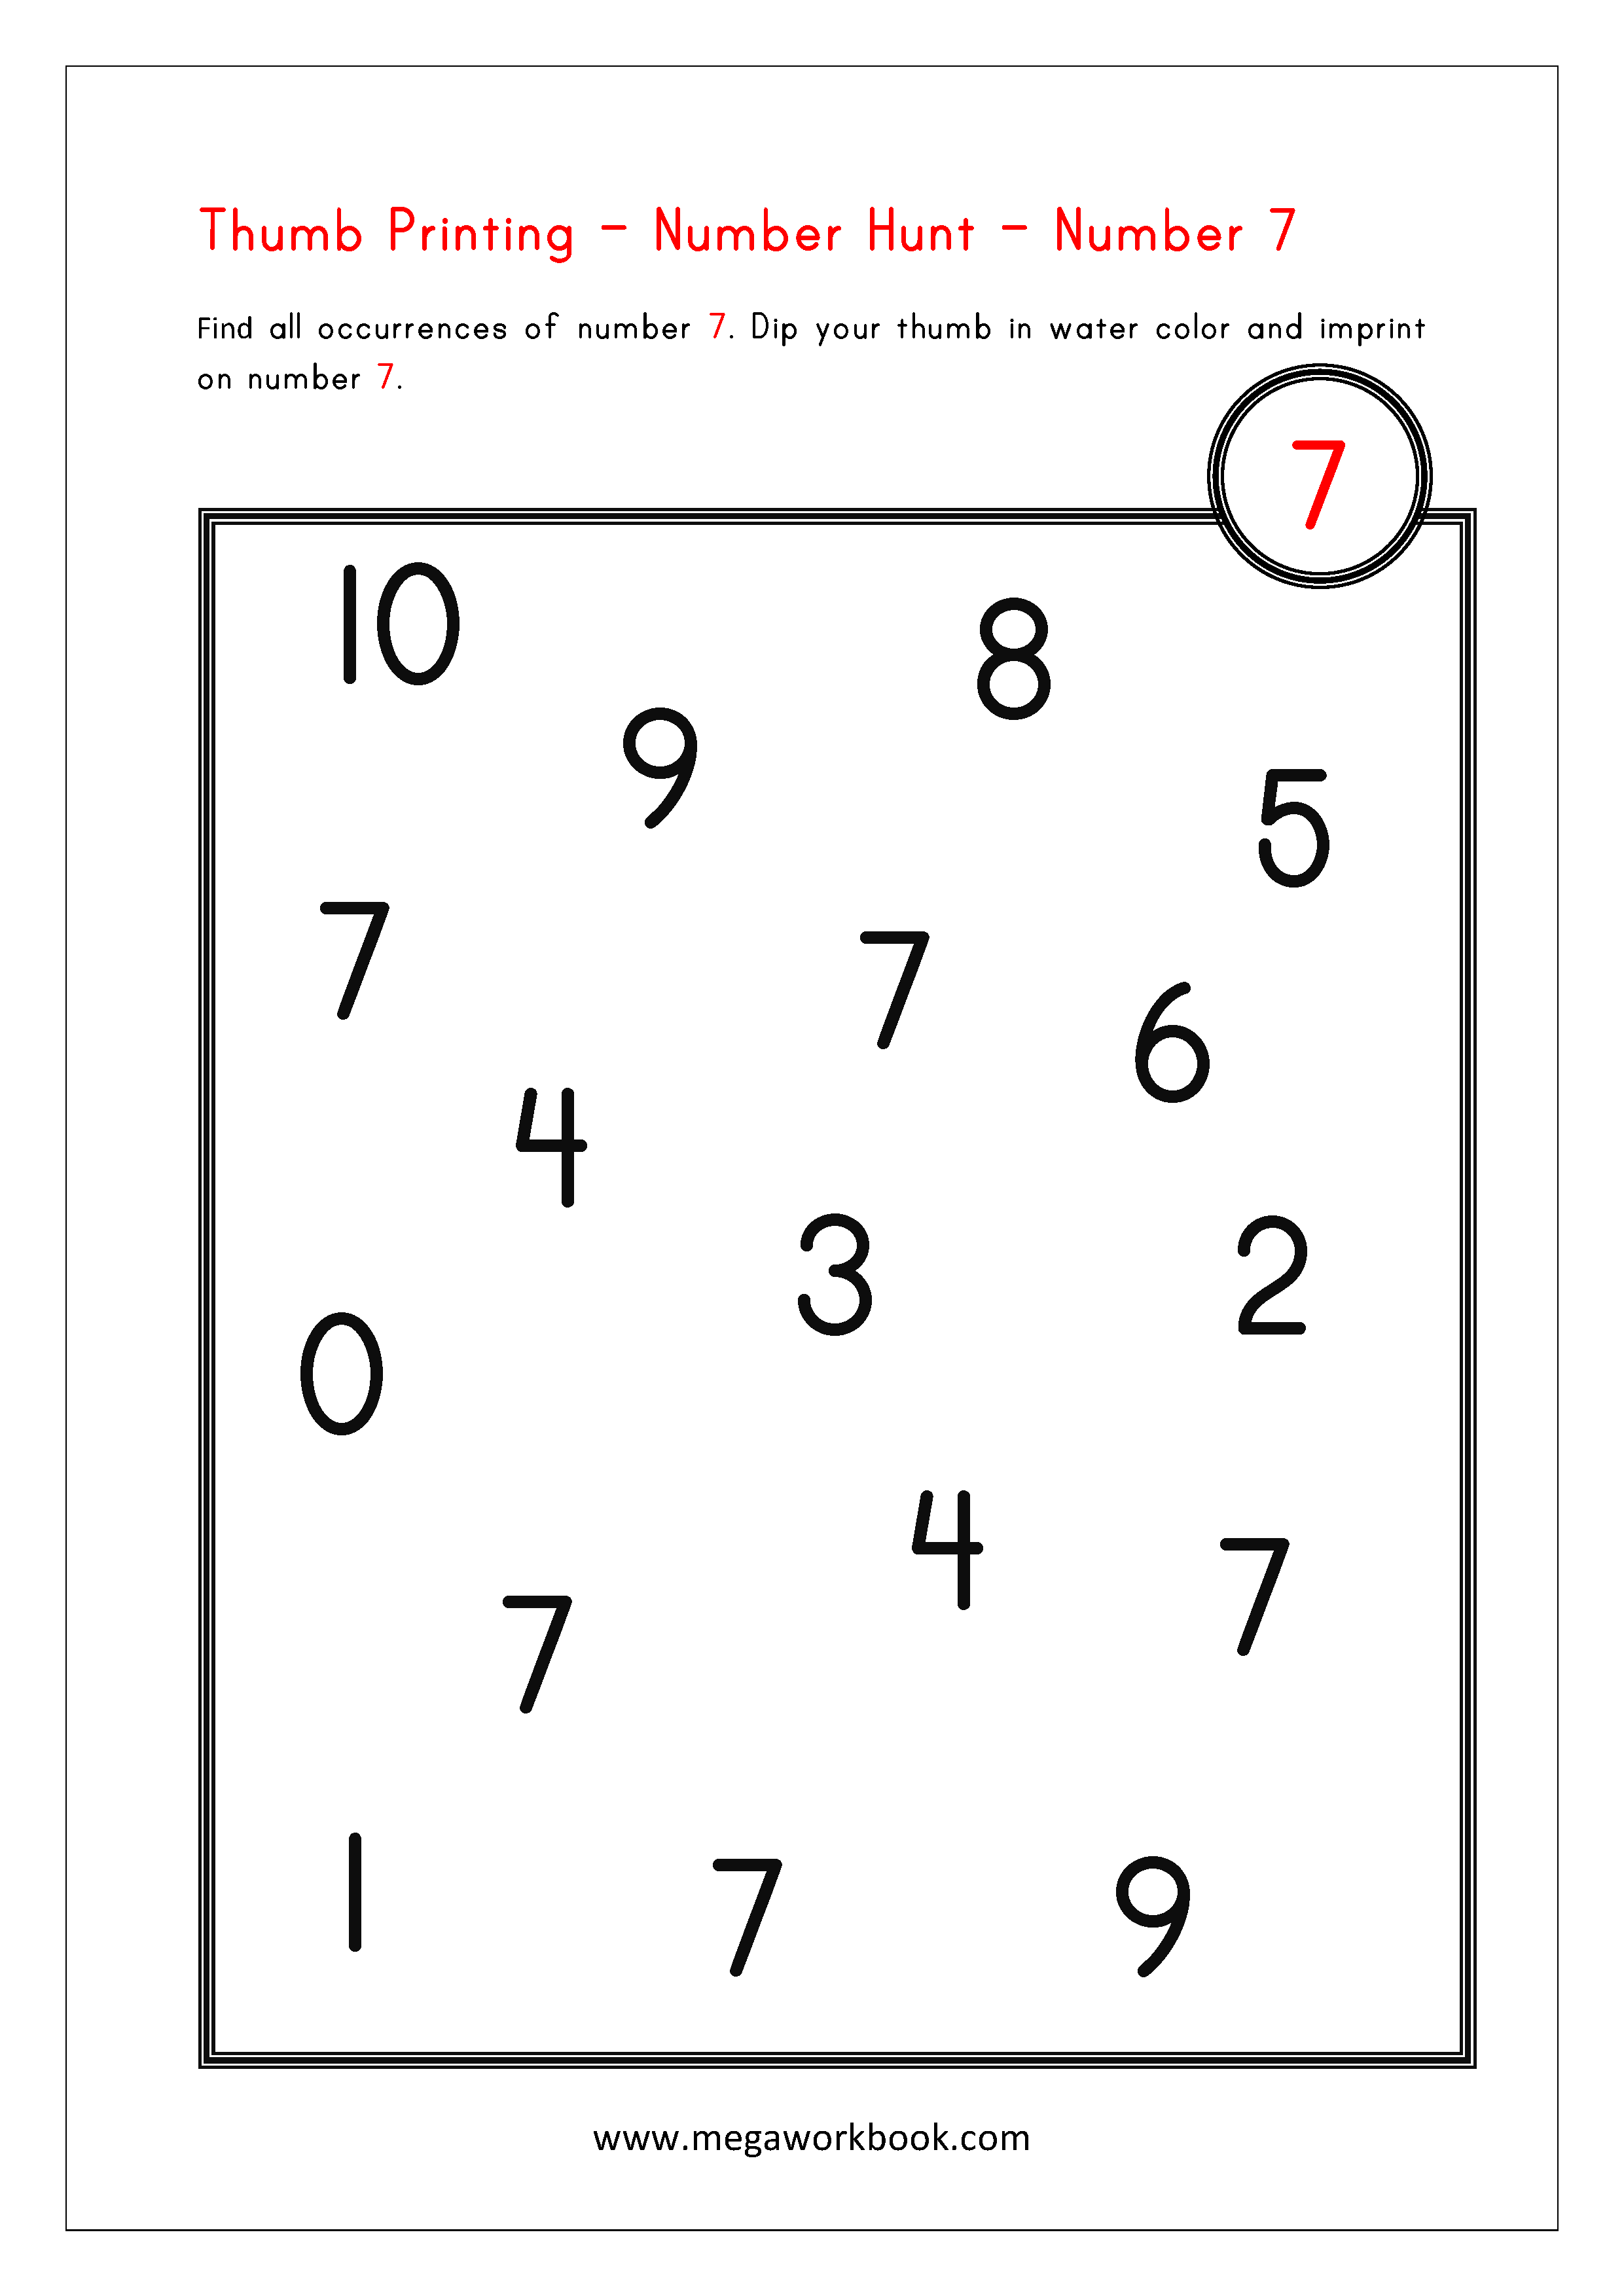 kidz-worksheets-preschool-counting-numbers-worksheet1